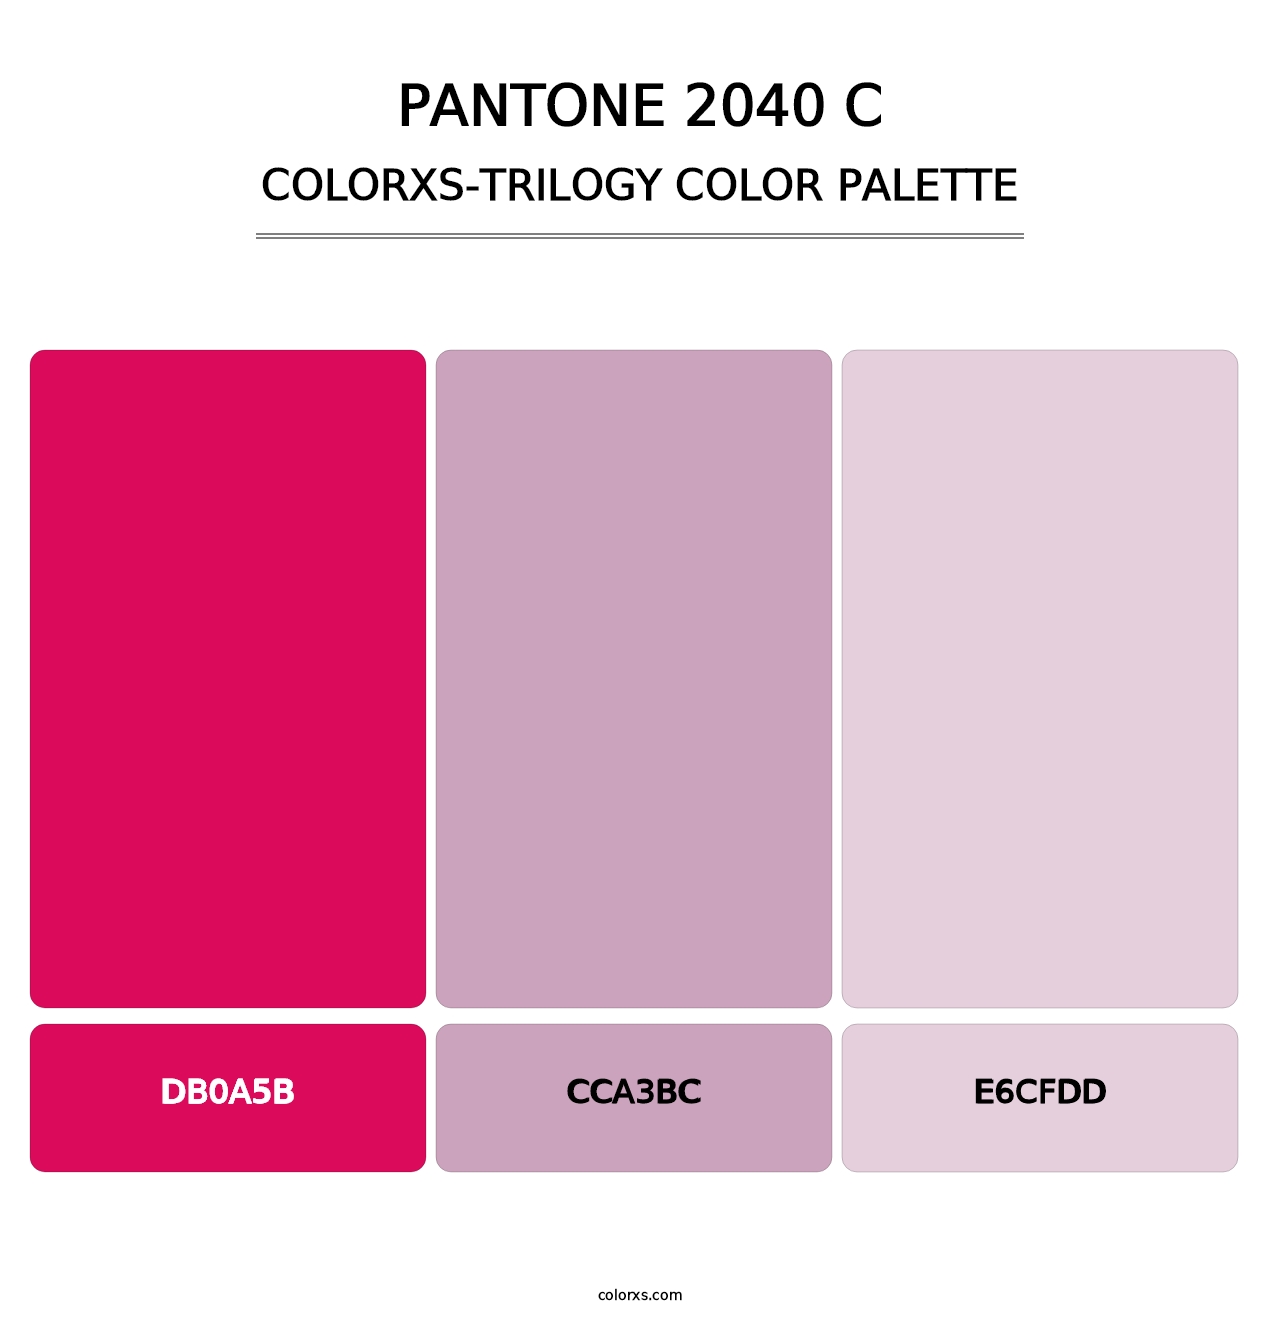 PANTONE 2040 C - Colorxs Trilogy Palette